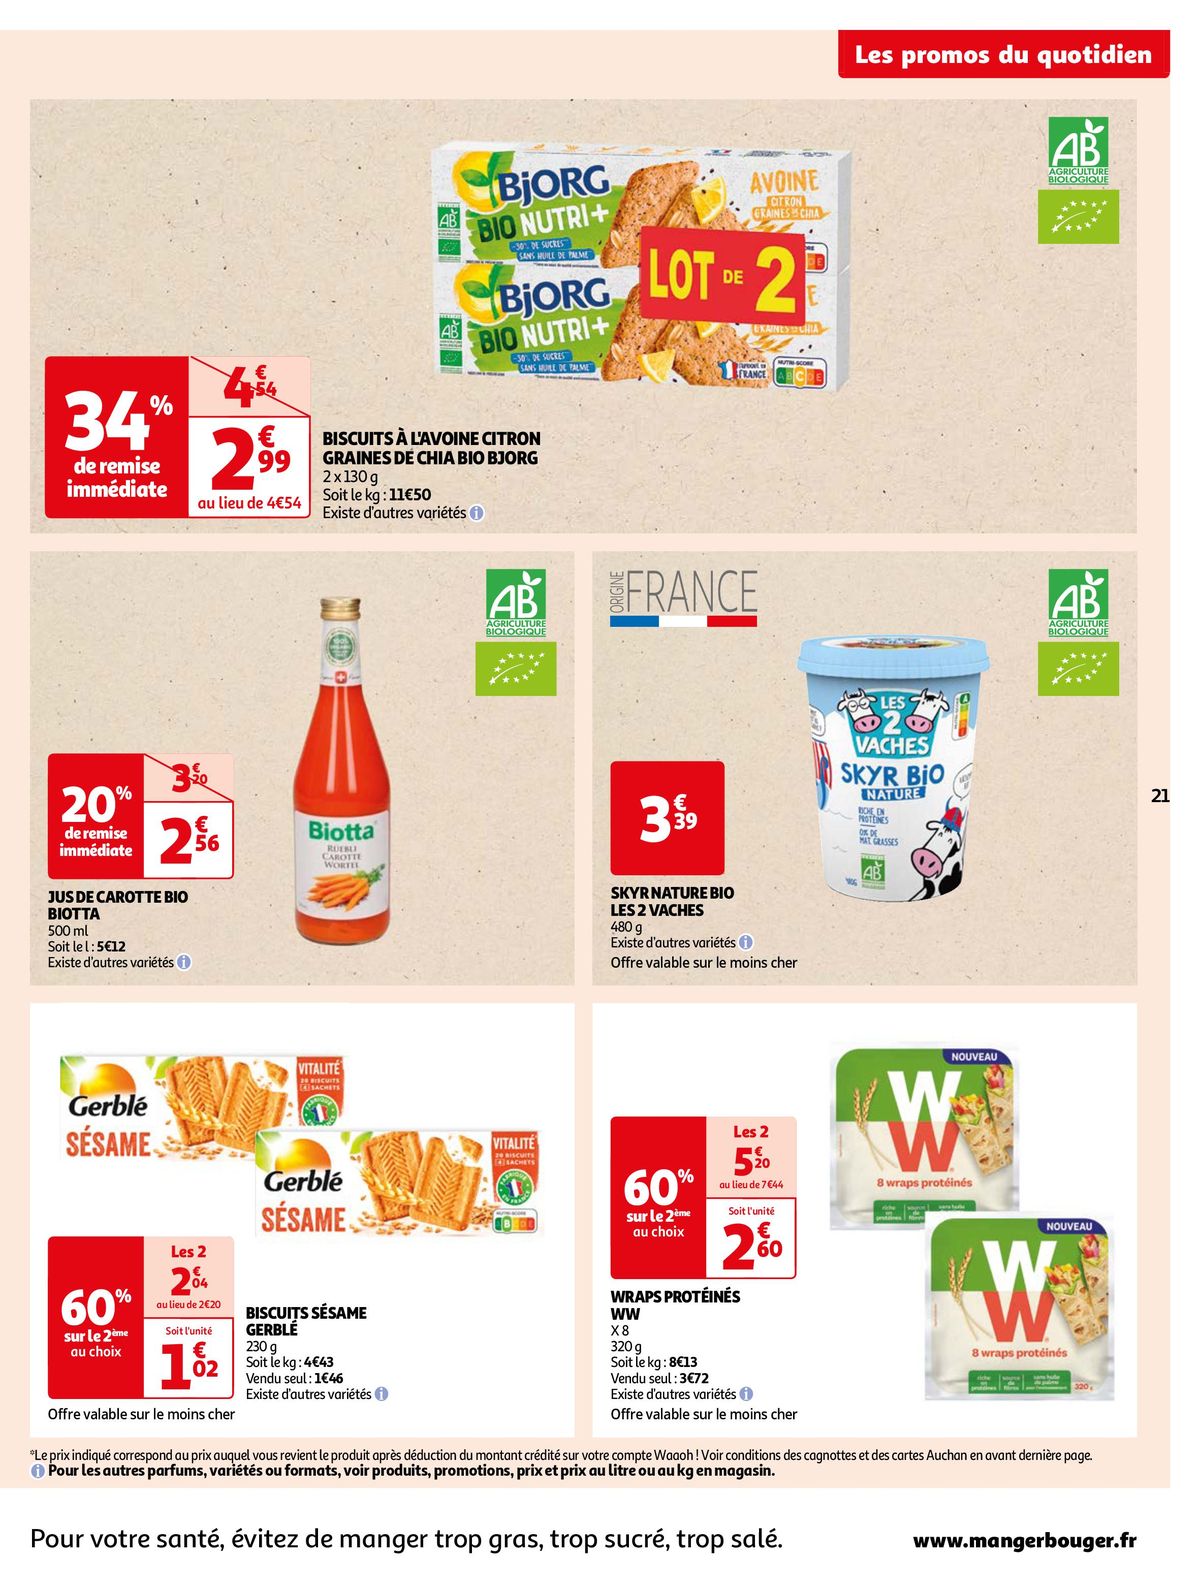 Catalogue Auchan s'associe de nouveau à Top Chef !, page 00021